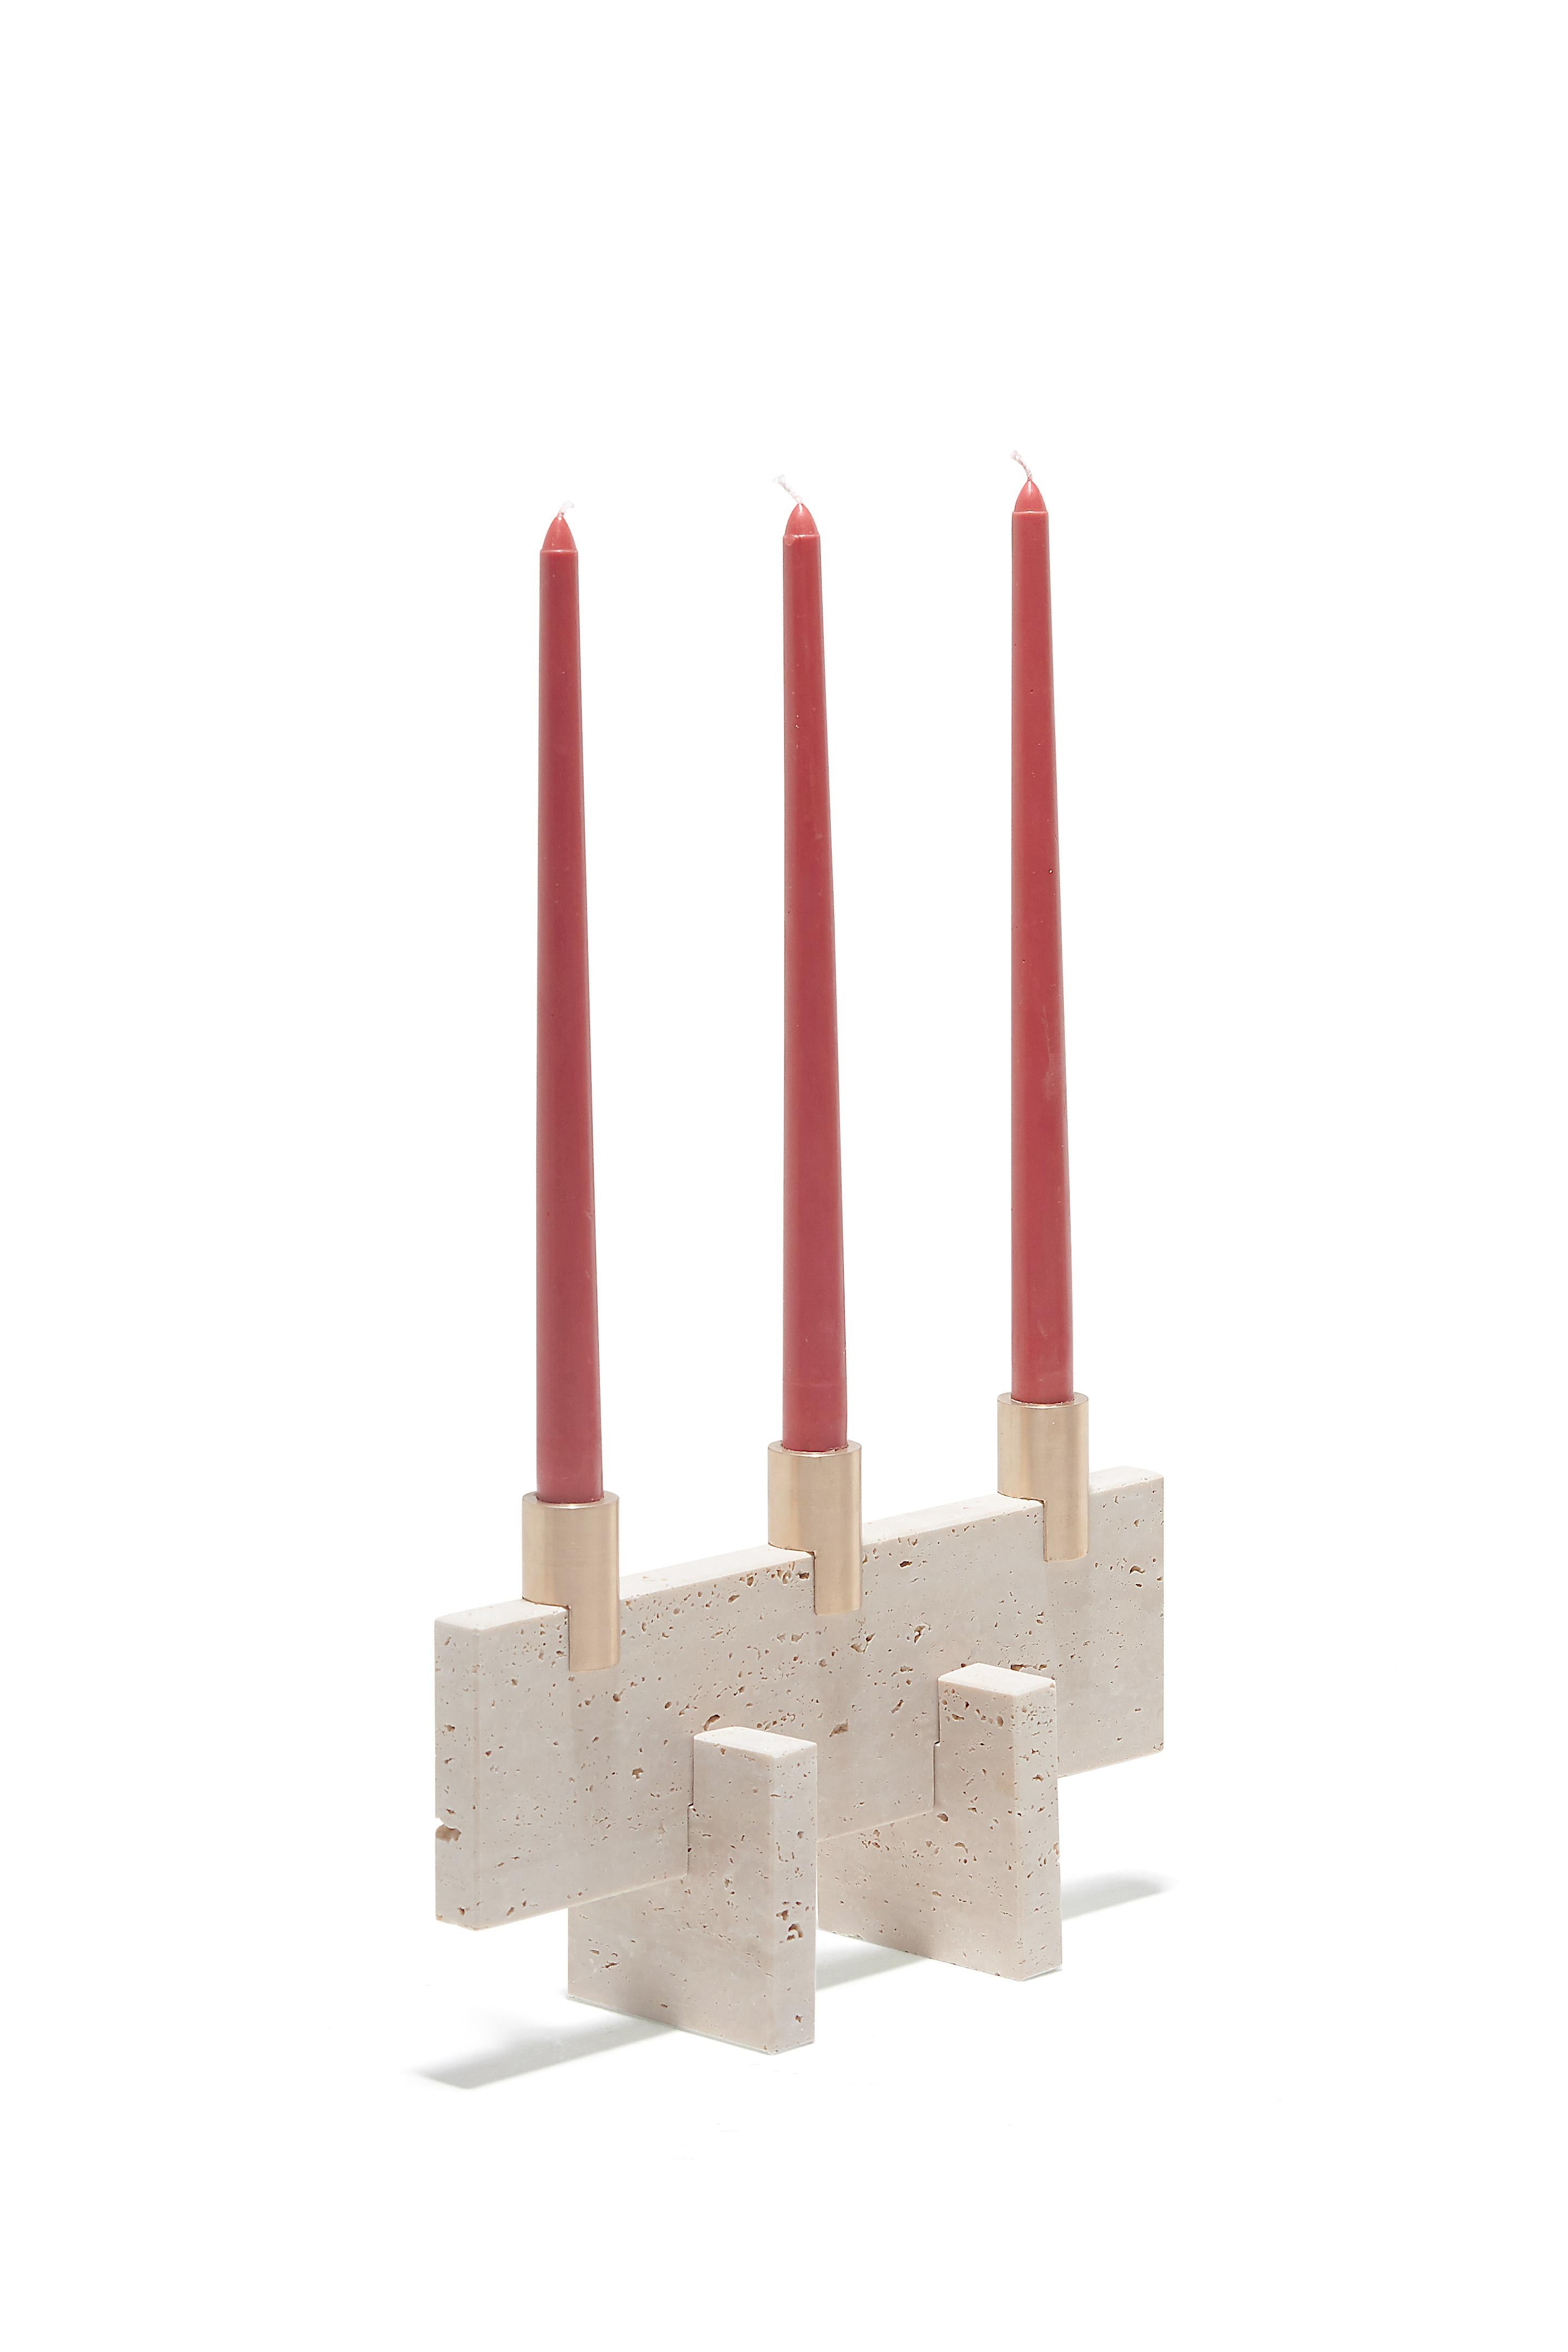 Le Fit Candle Three est un bougeoir de style minimaliste en marbre Travertin traité. Ce bougeoir est composé de trois pièces de marbre et de trois pièces de laiton massif, toutes assemblées de manière logique et harmonieuse.
Josep Vila Capdevila,